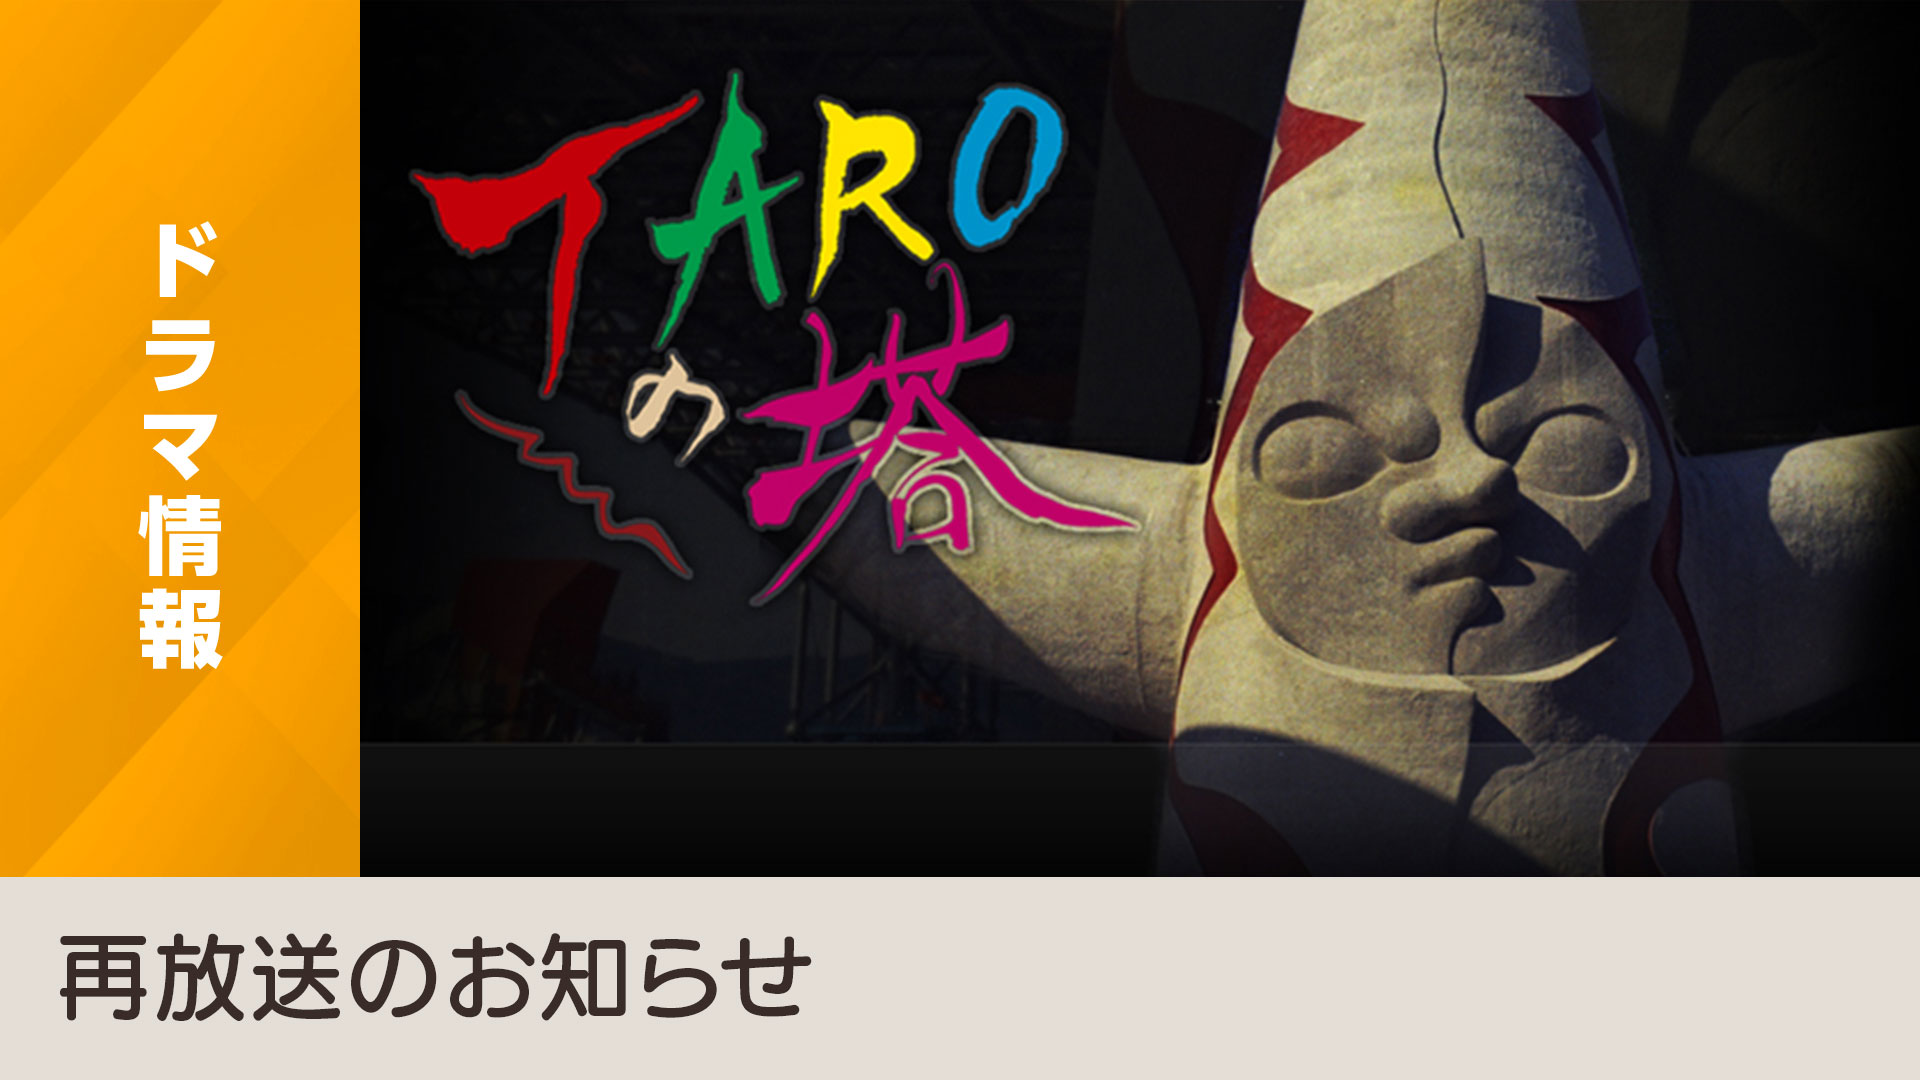 芸術家・岡本太郎の全貌を描いた「TAROの塔」を総合テレビにて再放送 - NHK